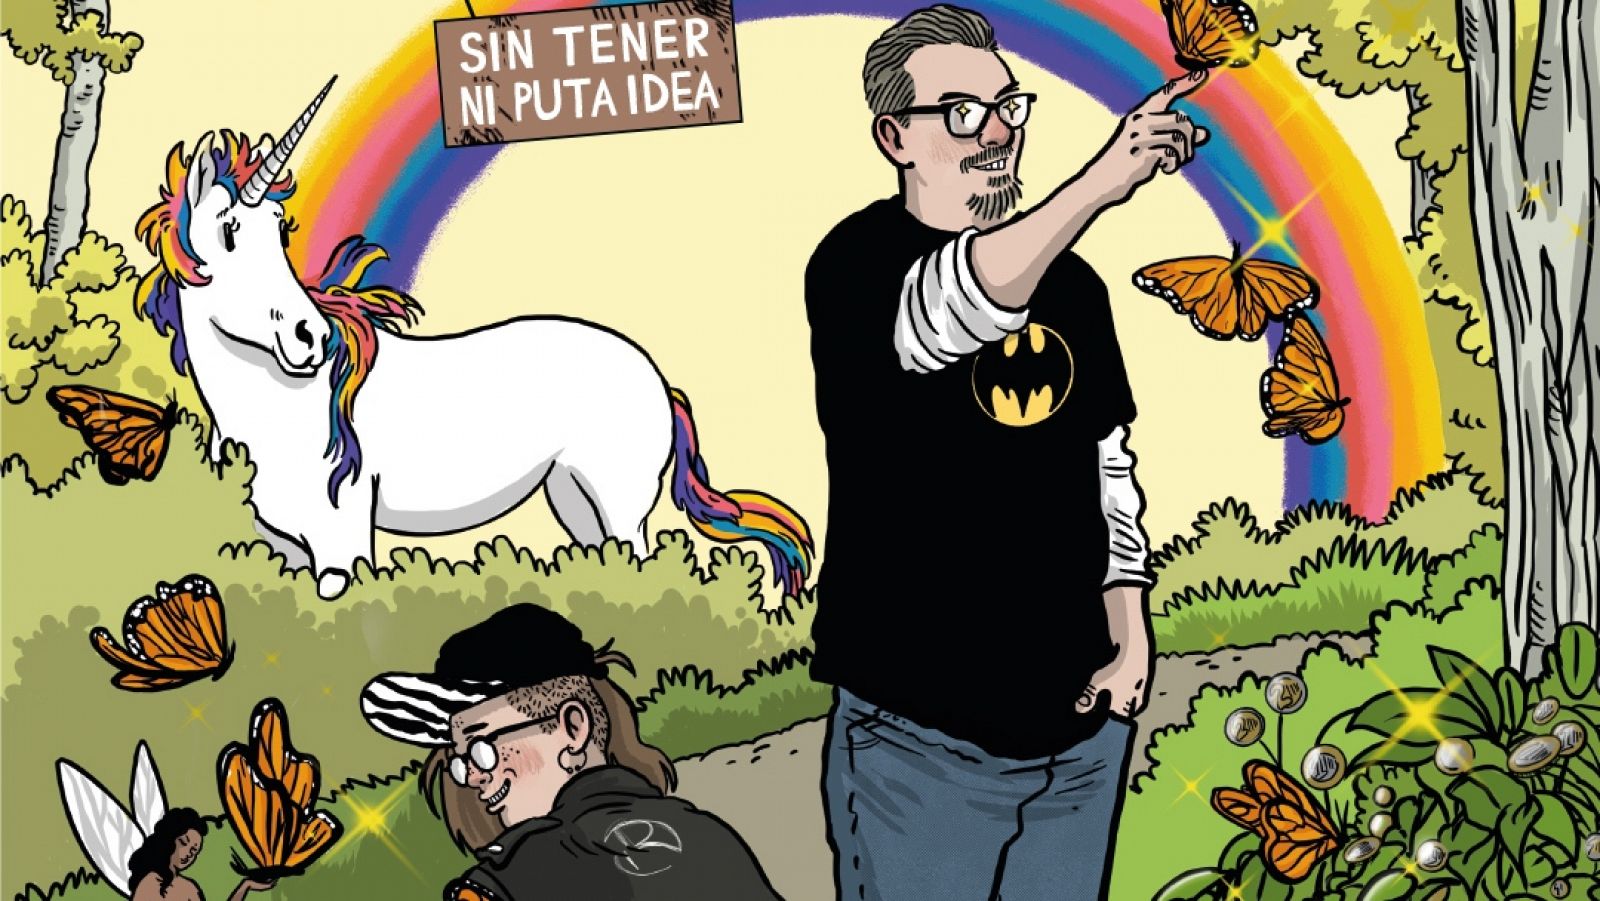 Detalle de la portada de 'Cómo salvar la industria del cómic sin tener ni puta idea'